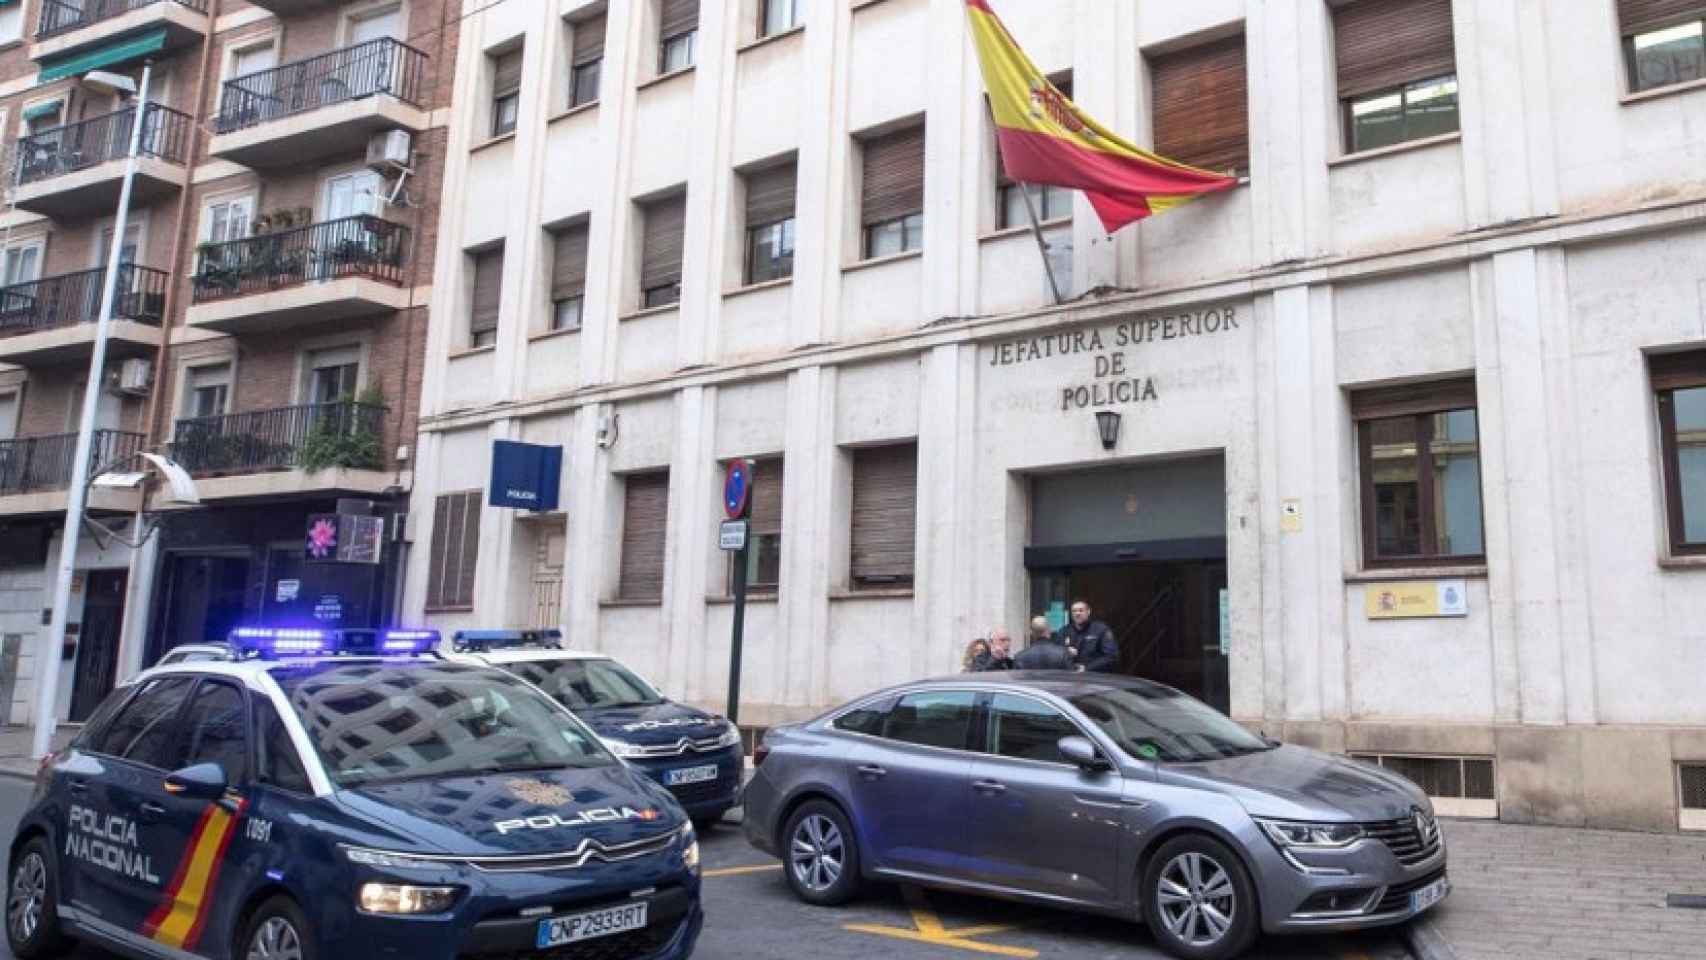 La fachada de la Jefatura Superior de la Policía Nacional en Murcia.